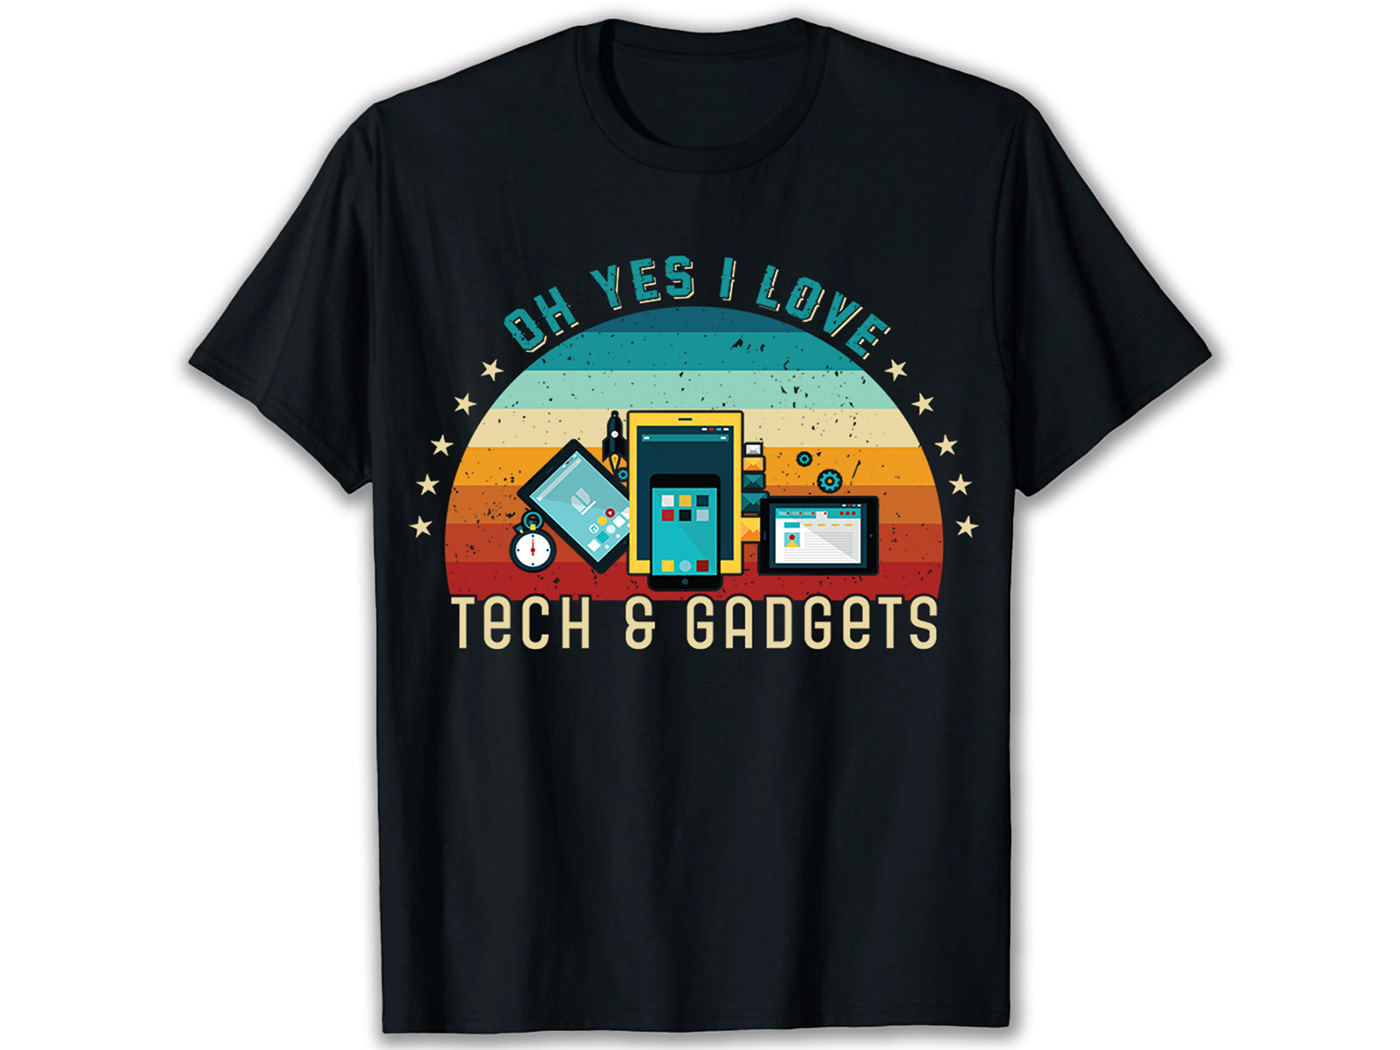 Technology T-shirt Design